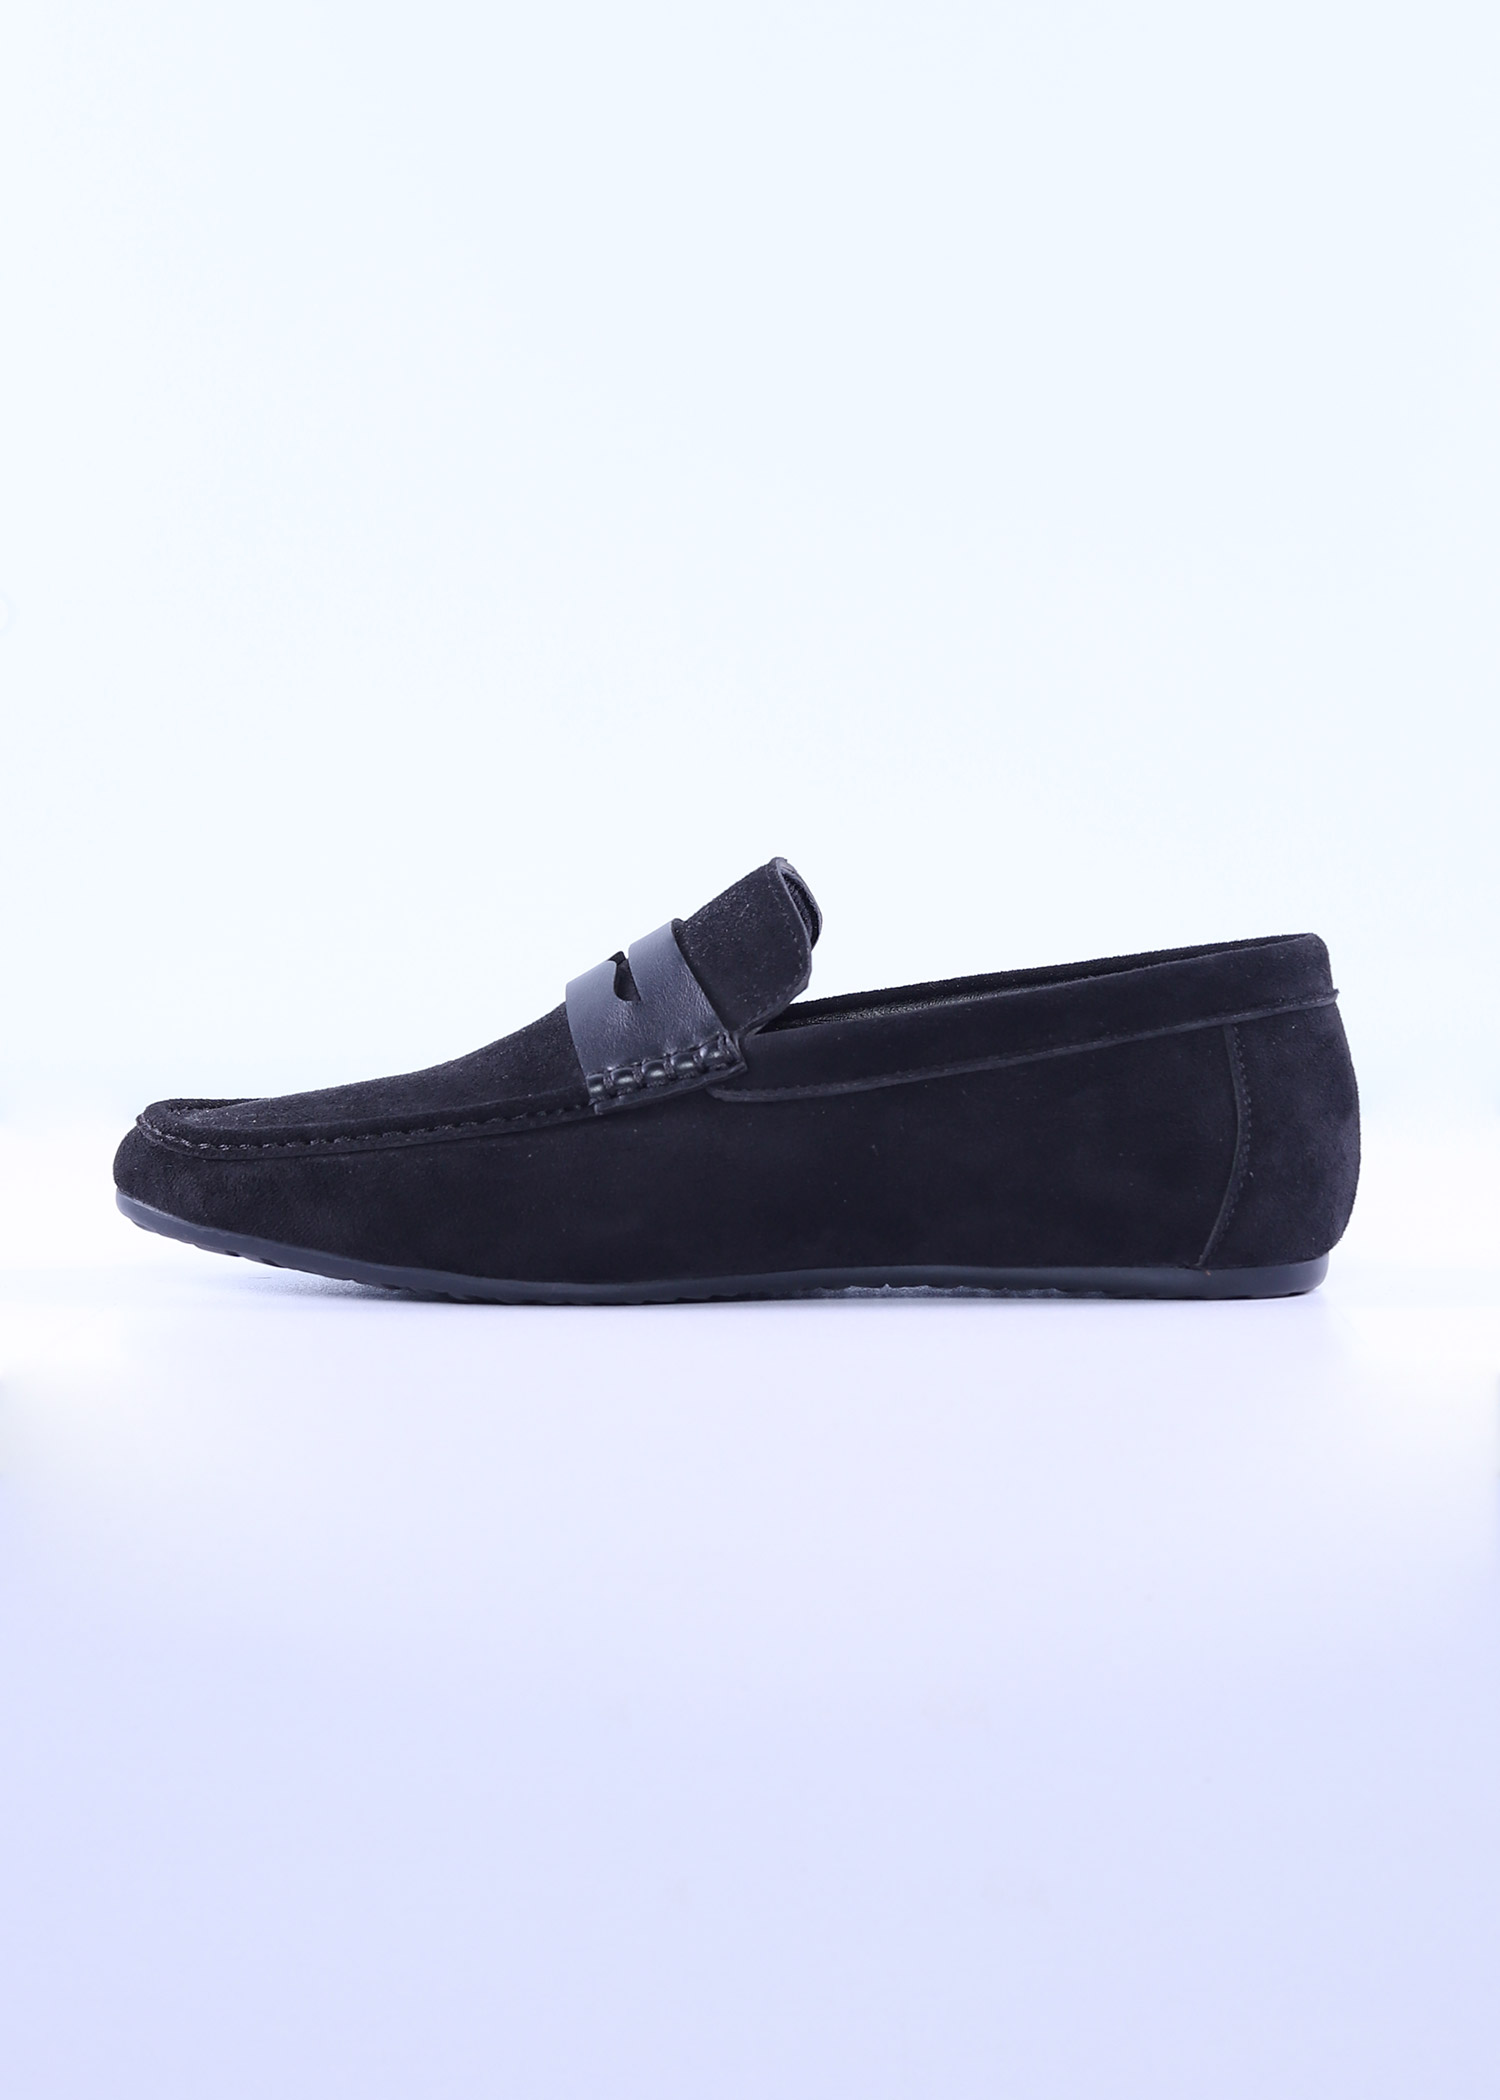 navia mens shoes black color cover